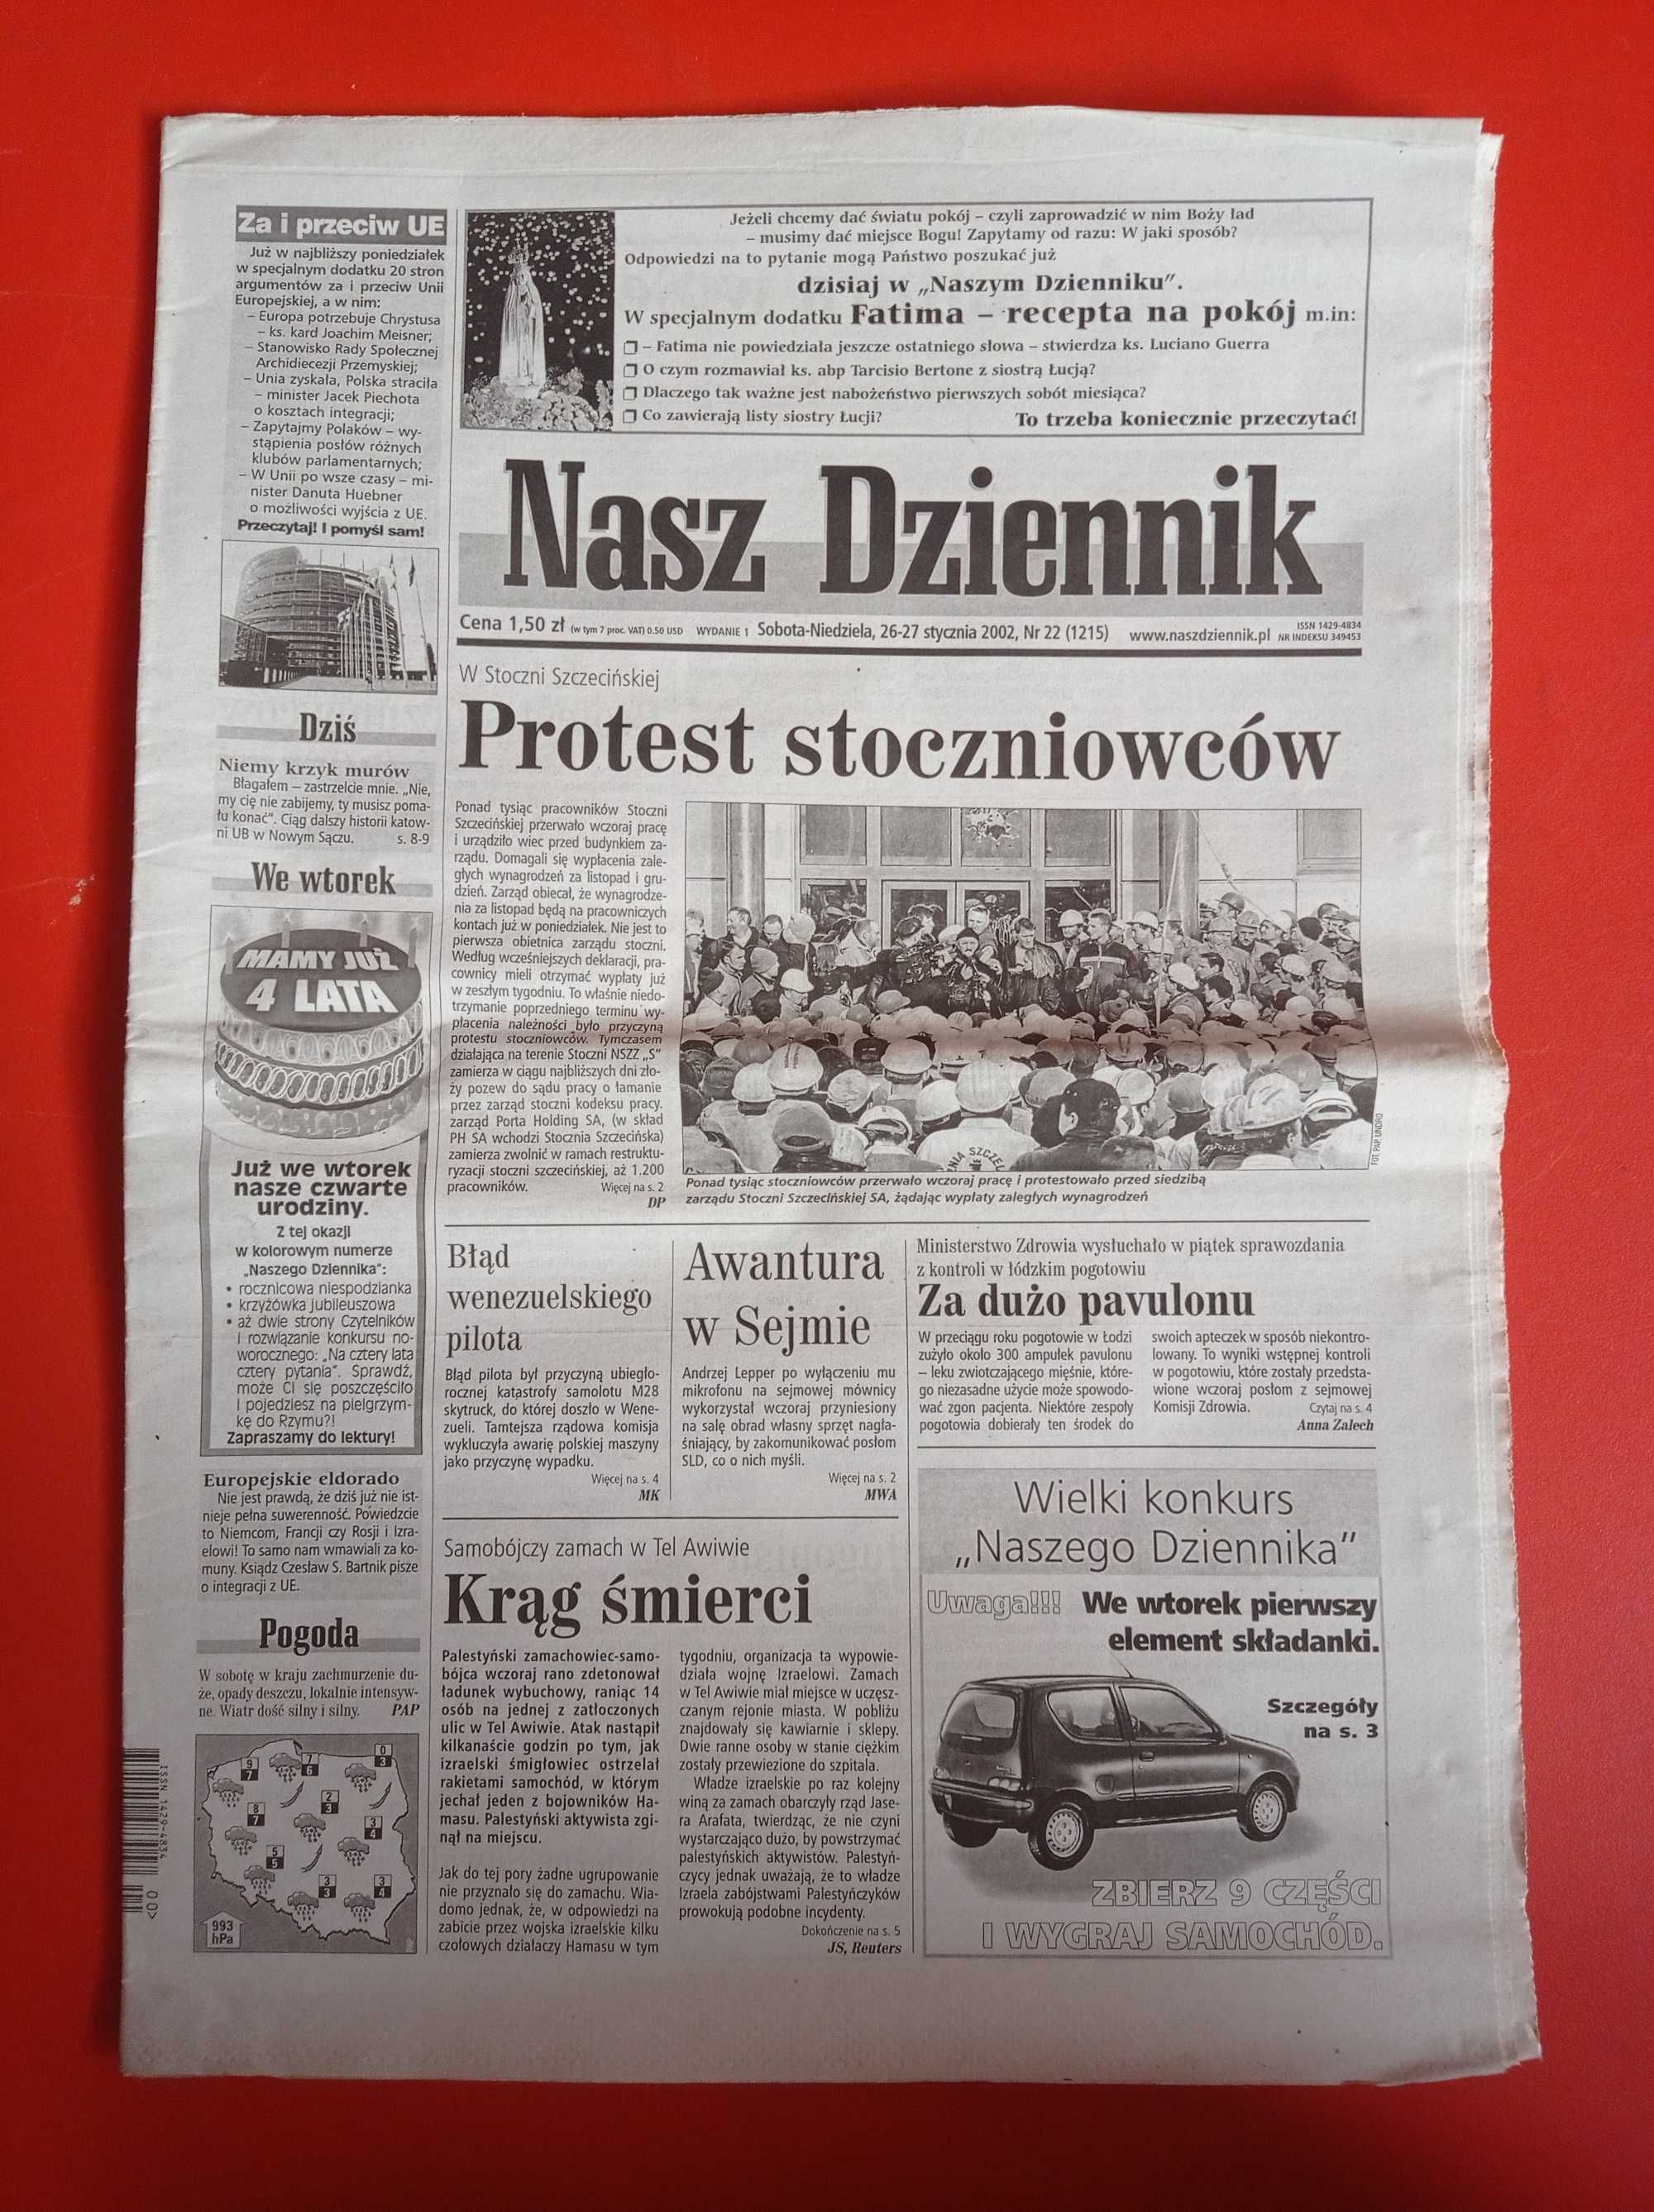 Nasz Dziennik, nr 22/2002, 26-27 stycznia 2002